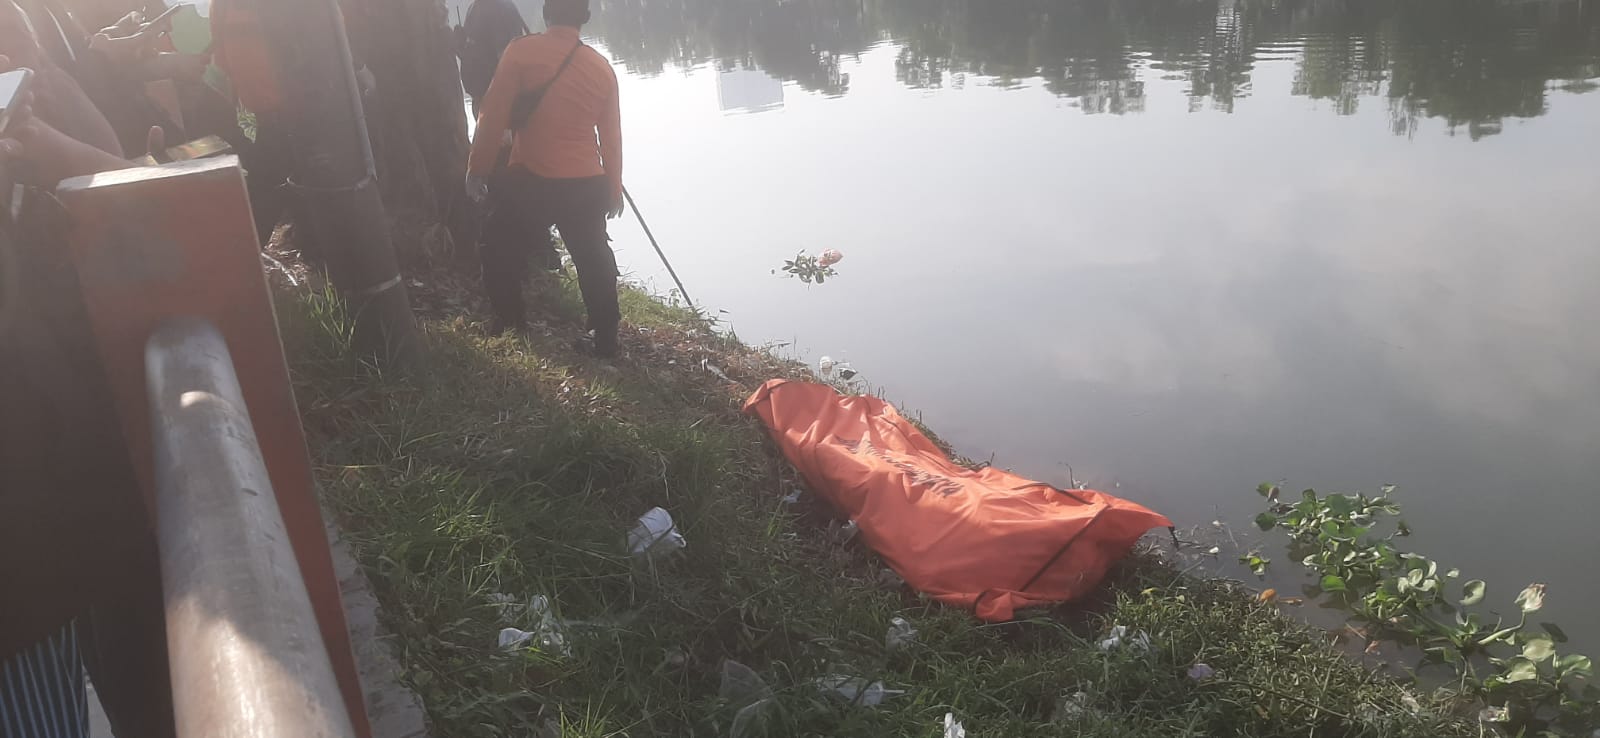 Mayat Mengapung di Sungai Identik dengan Gilang karena Ada Tato di Tangan